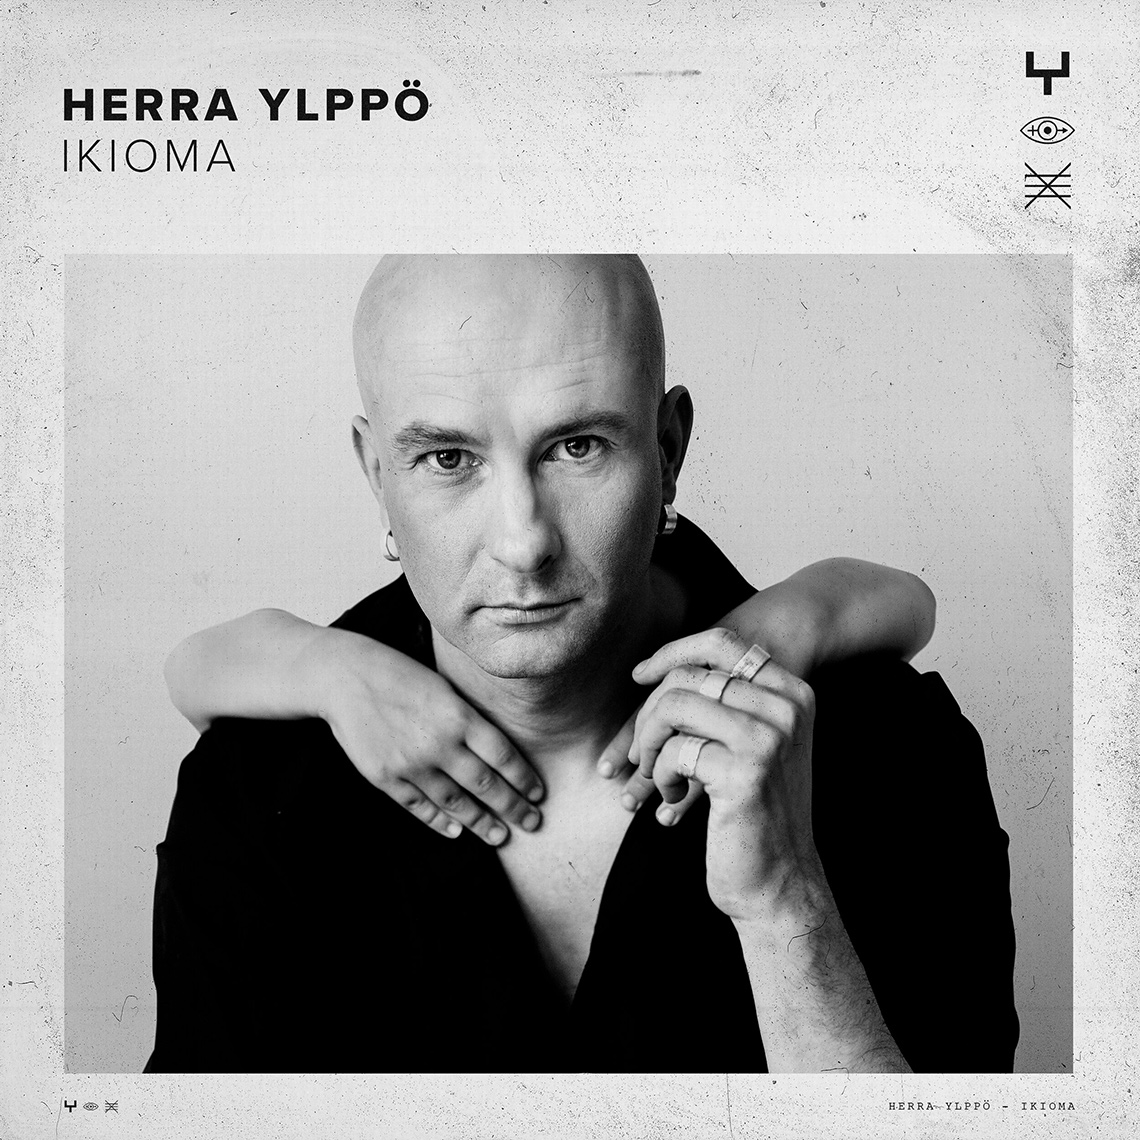 Herra Ylppo EX : Ikioma // Cover Photo by Aki-Pekka Sinikoski